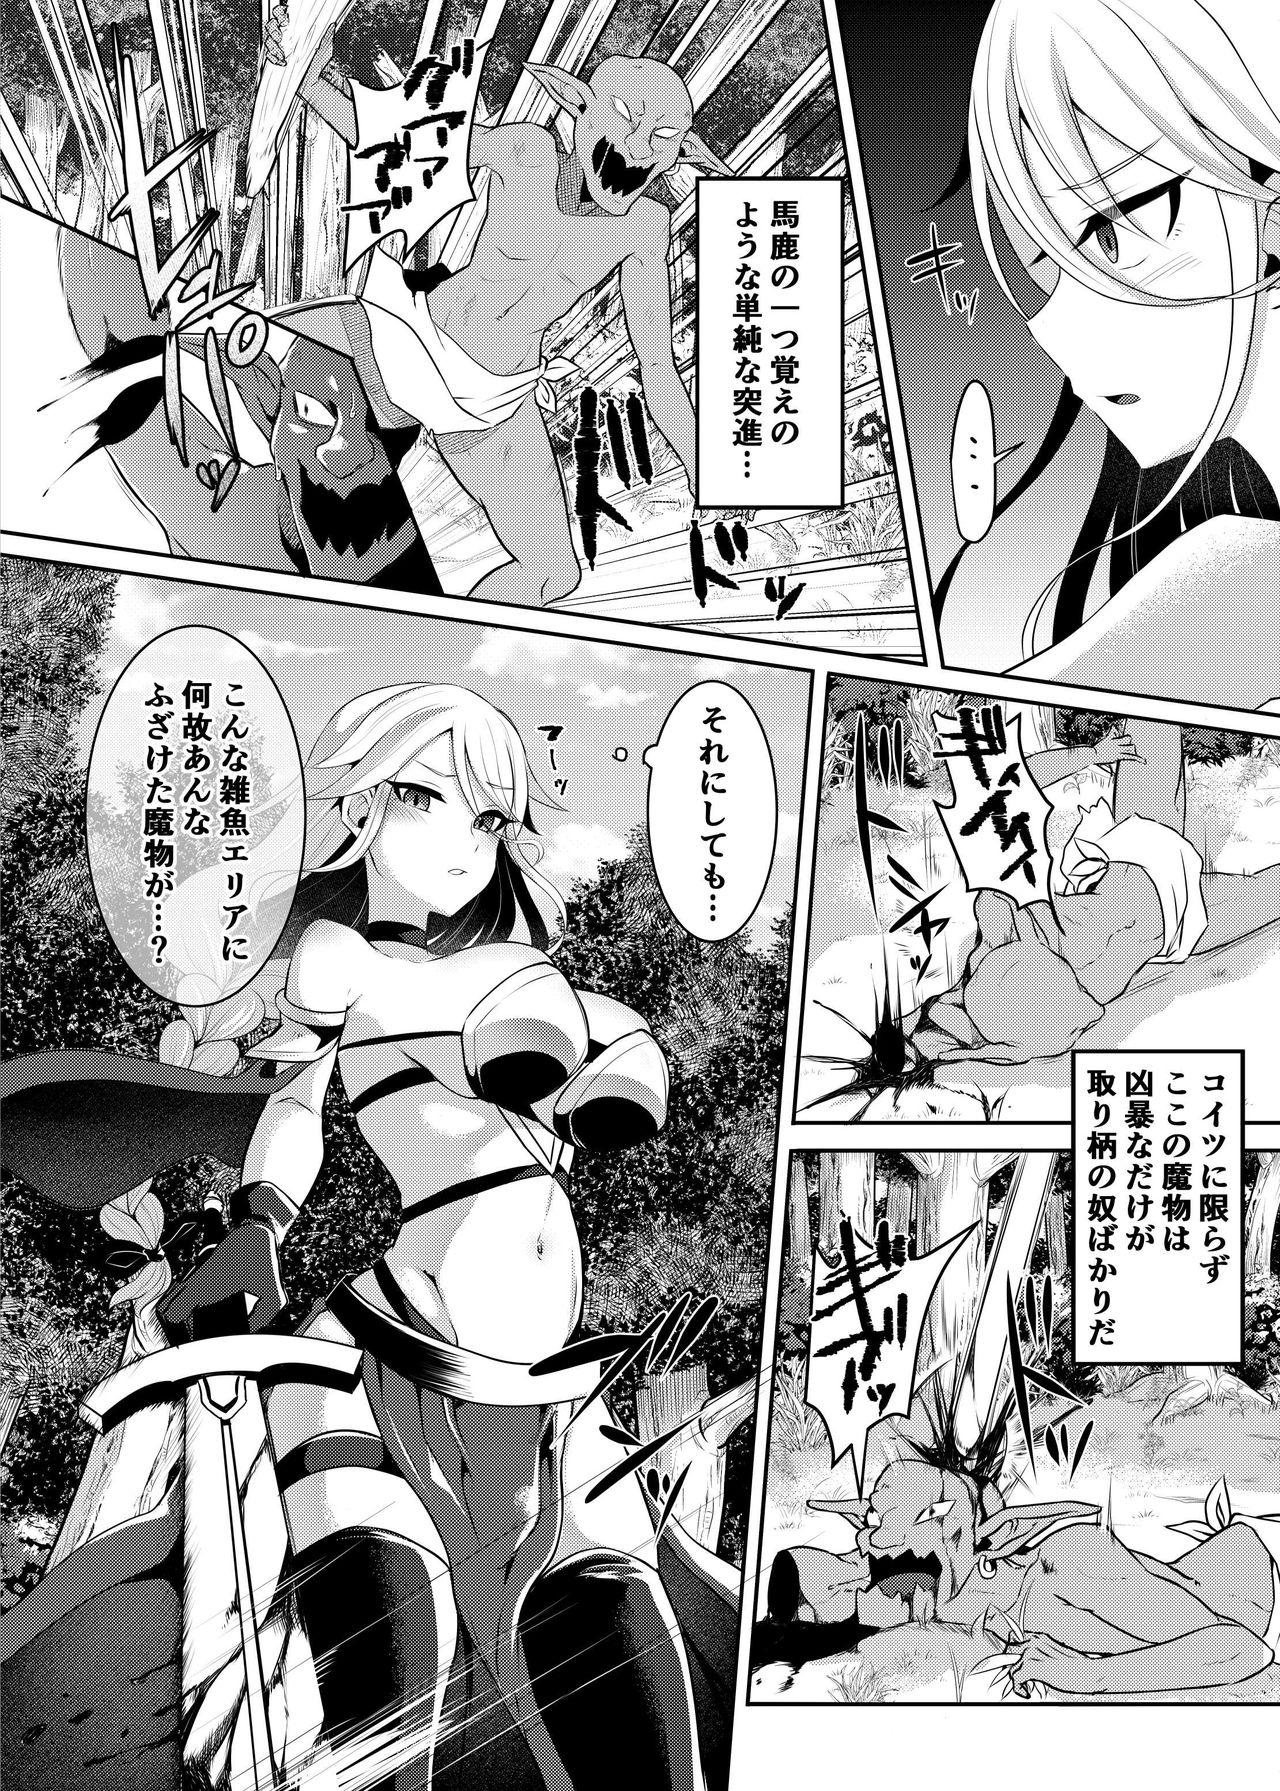 Swordfighter futanari continuous ejaculation 2